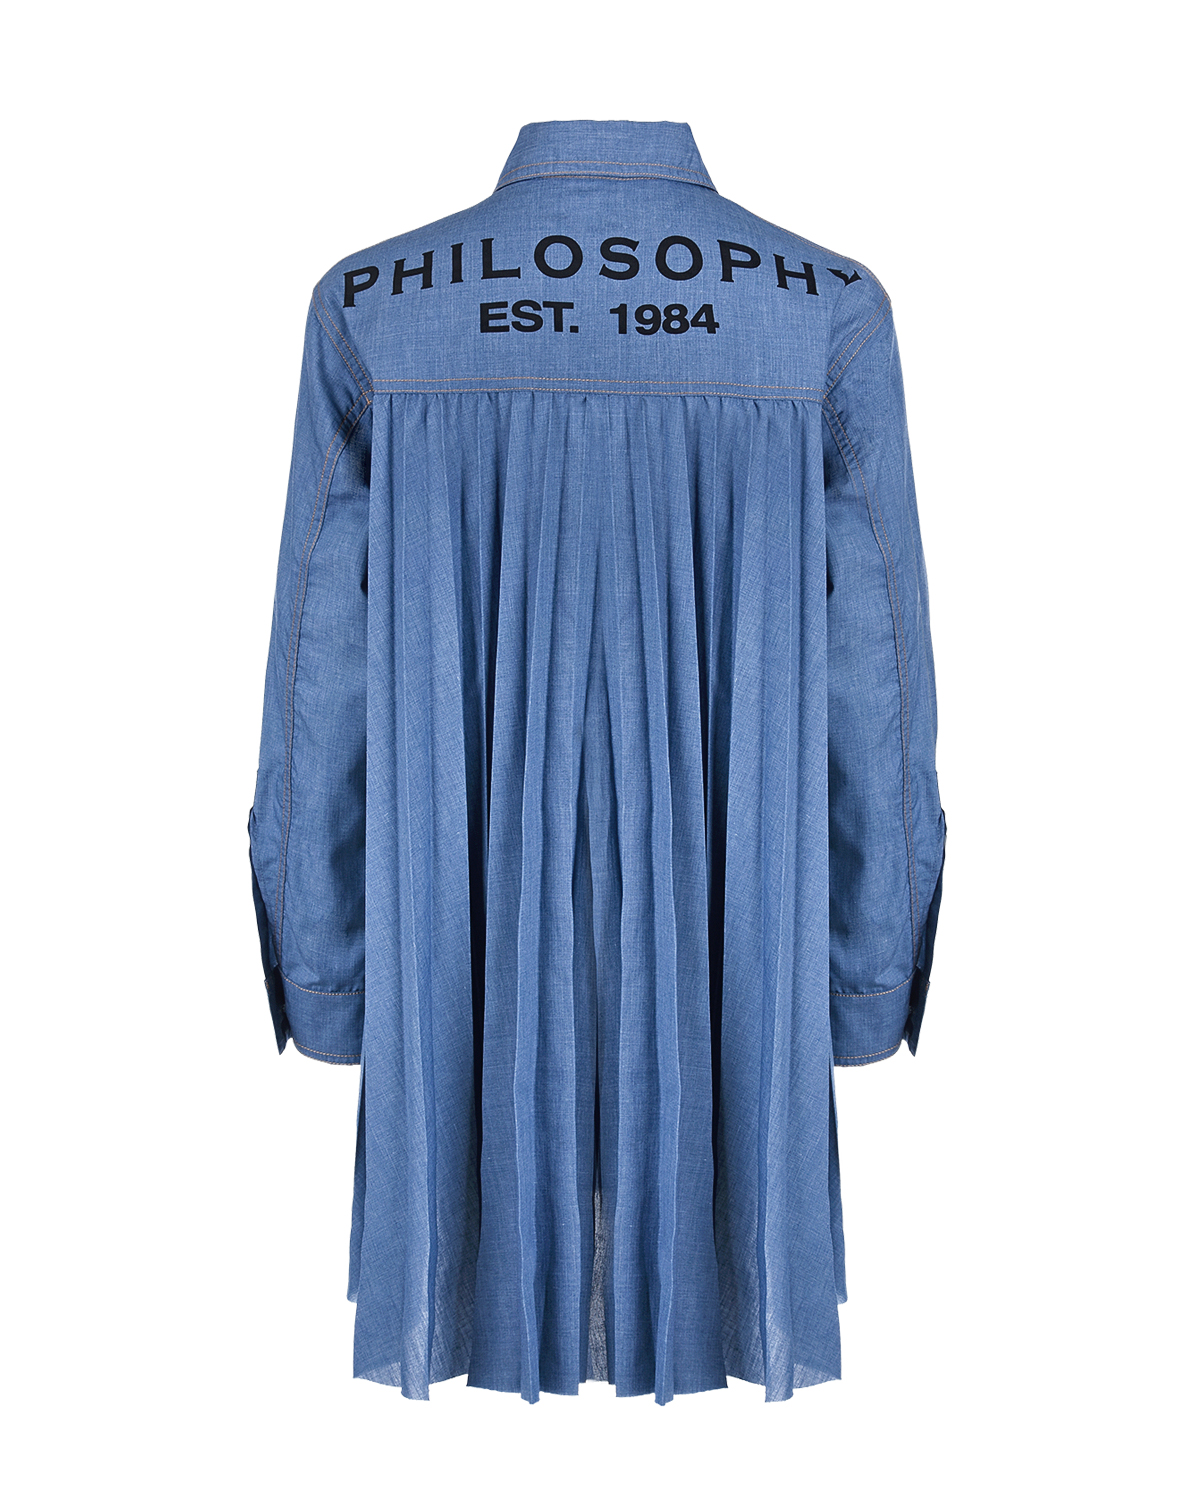 Джинсовое платье с плиссированной спинкой Philosophy детское, размер 140, цвет голубой - фото 2